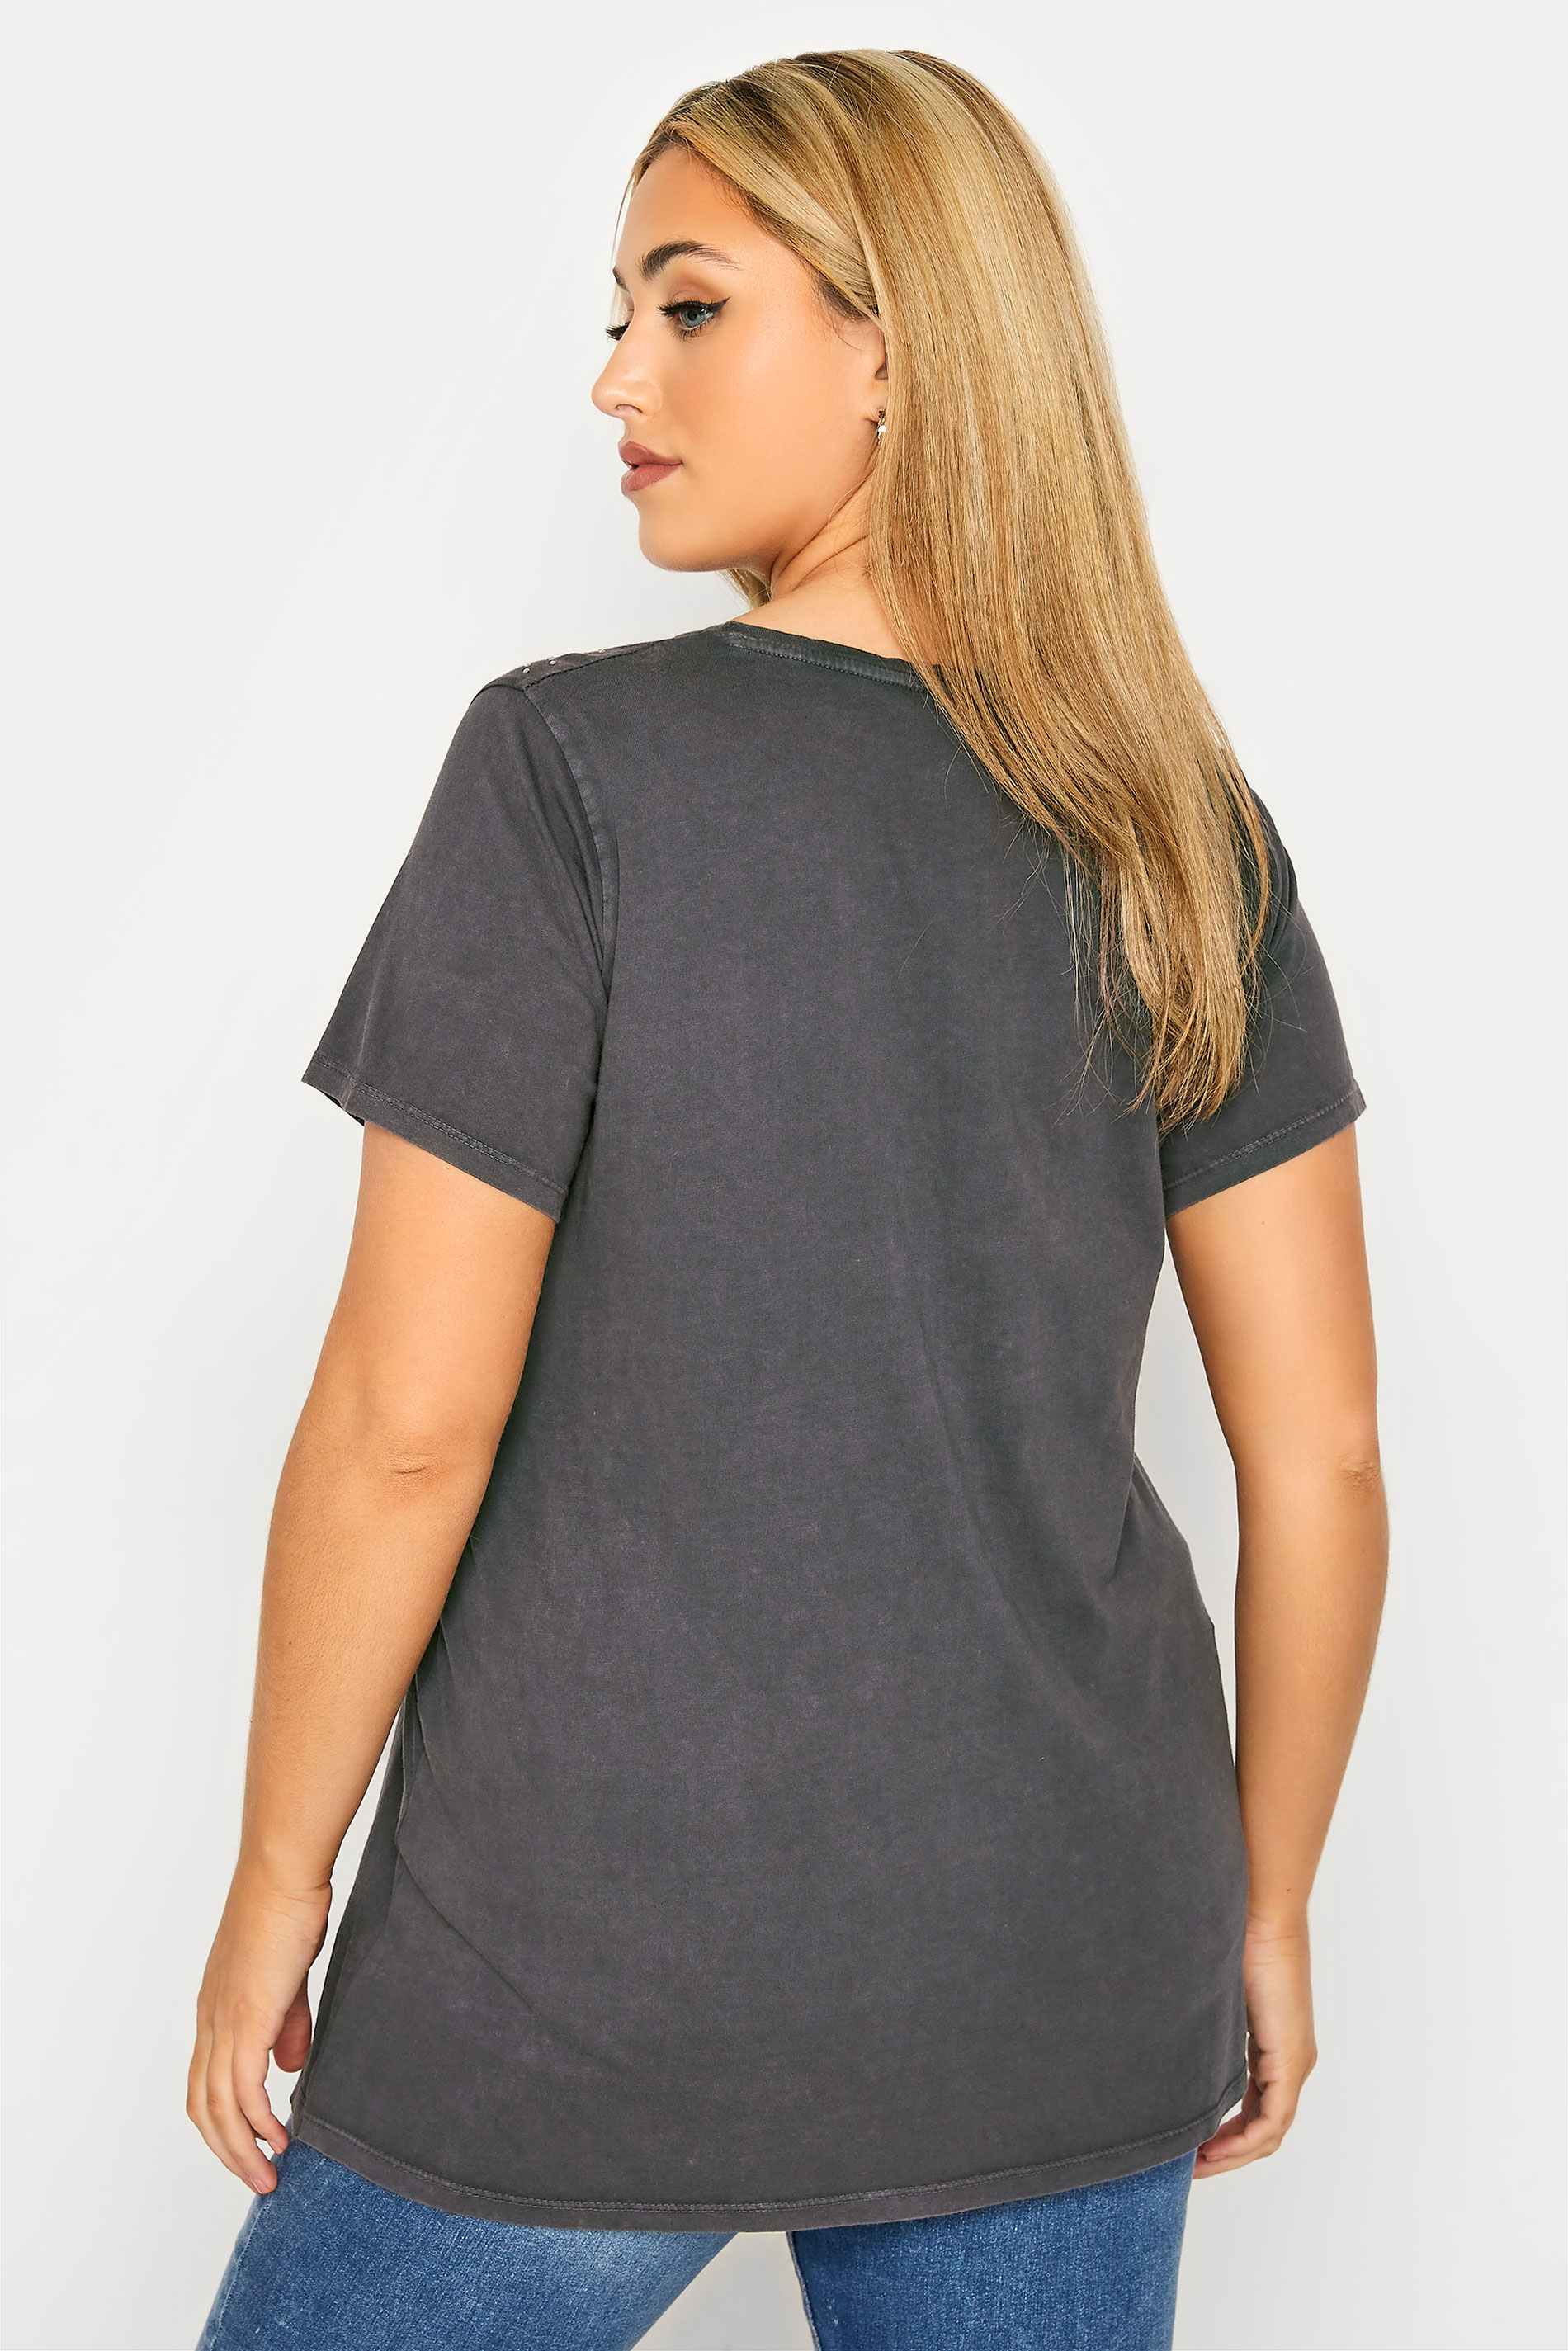 Grande taille  Tops Grande taille  T-Shirts | T-Shirt Gris Charbonneux Délavé Clouté - RT48844